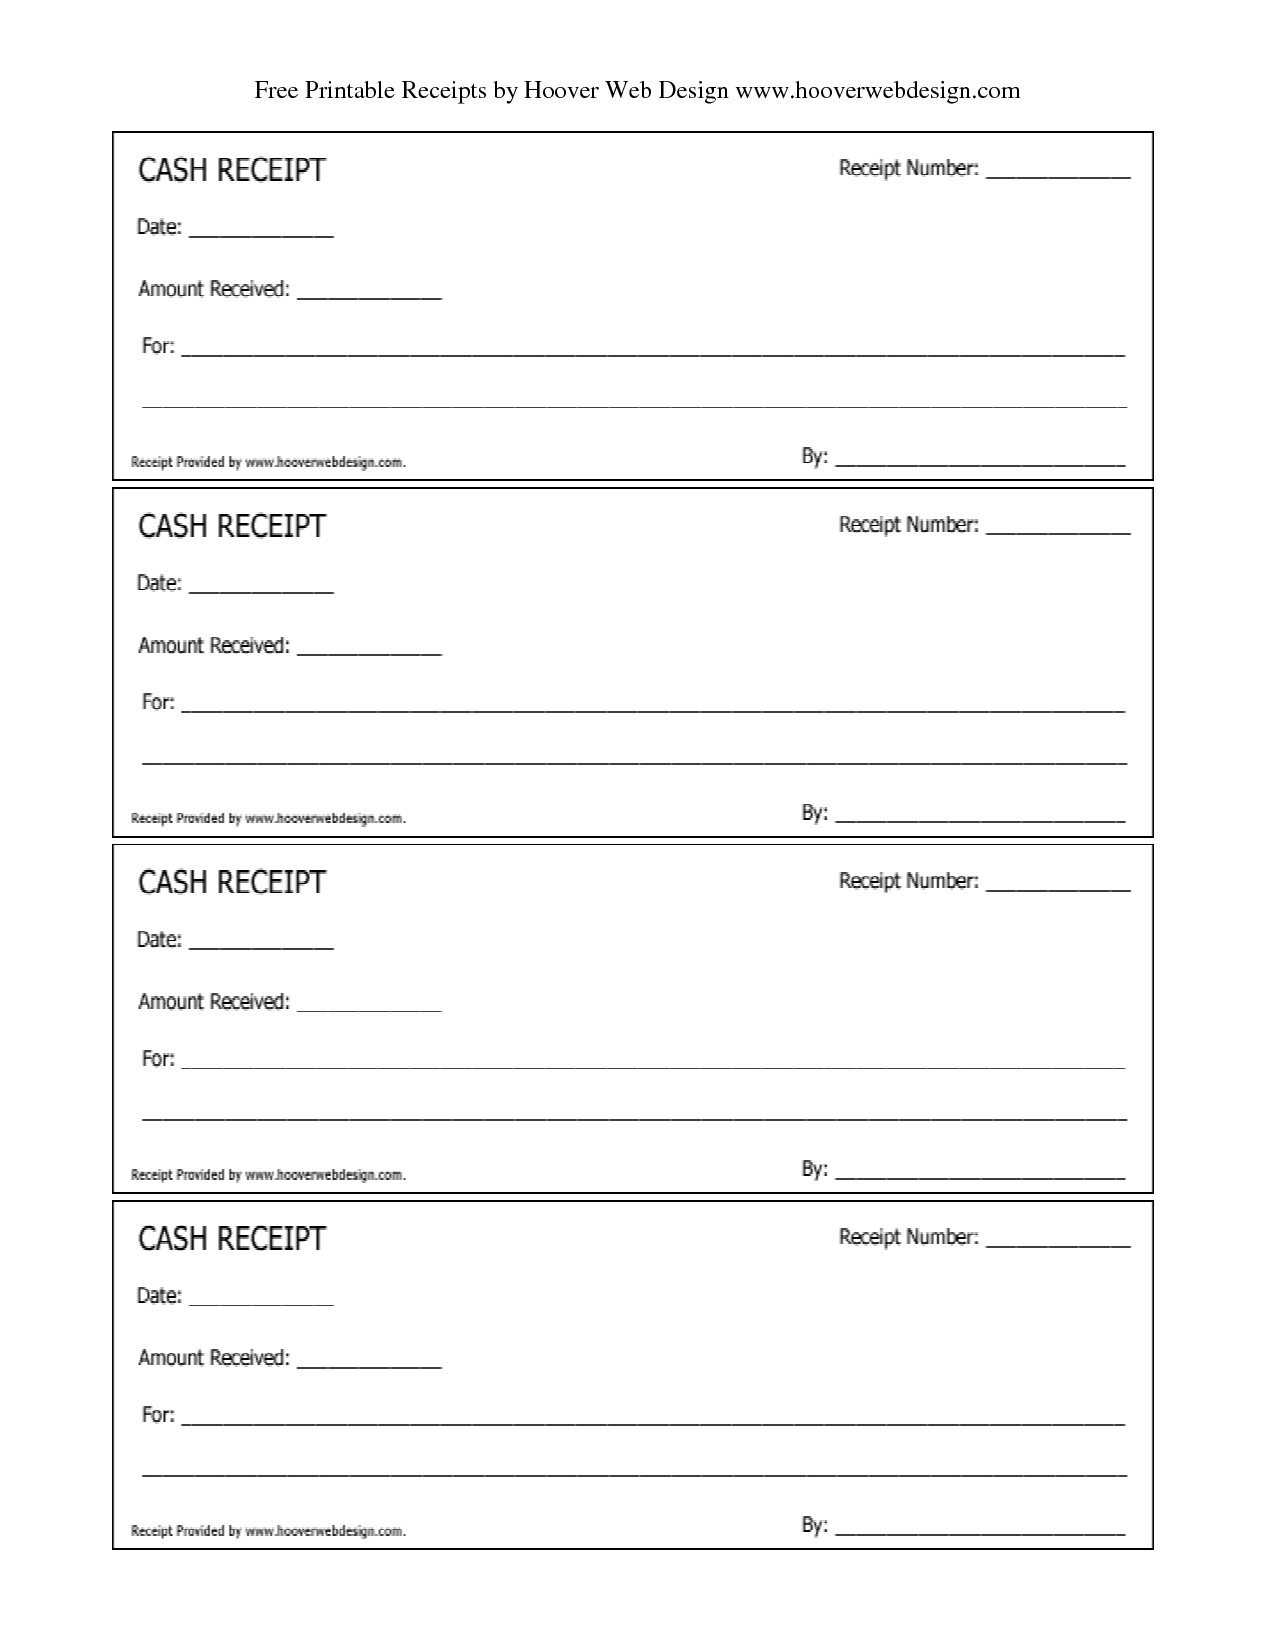 Free Printable Receipt Templates | Free Printable Cash Receipts - Free Printable Blank Receipt Form